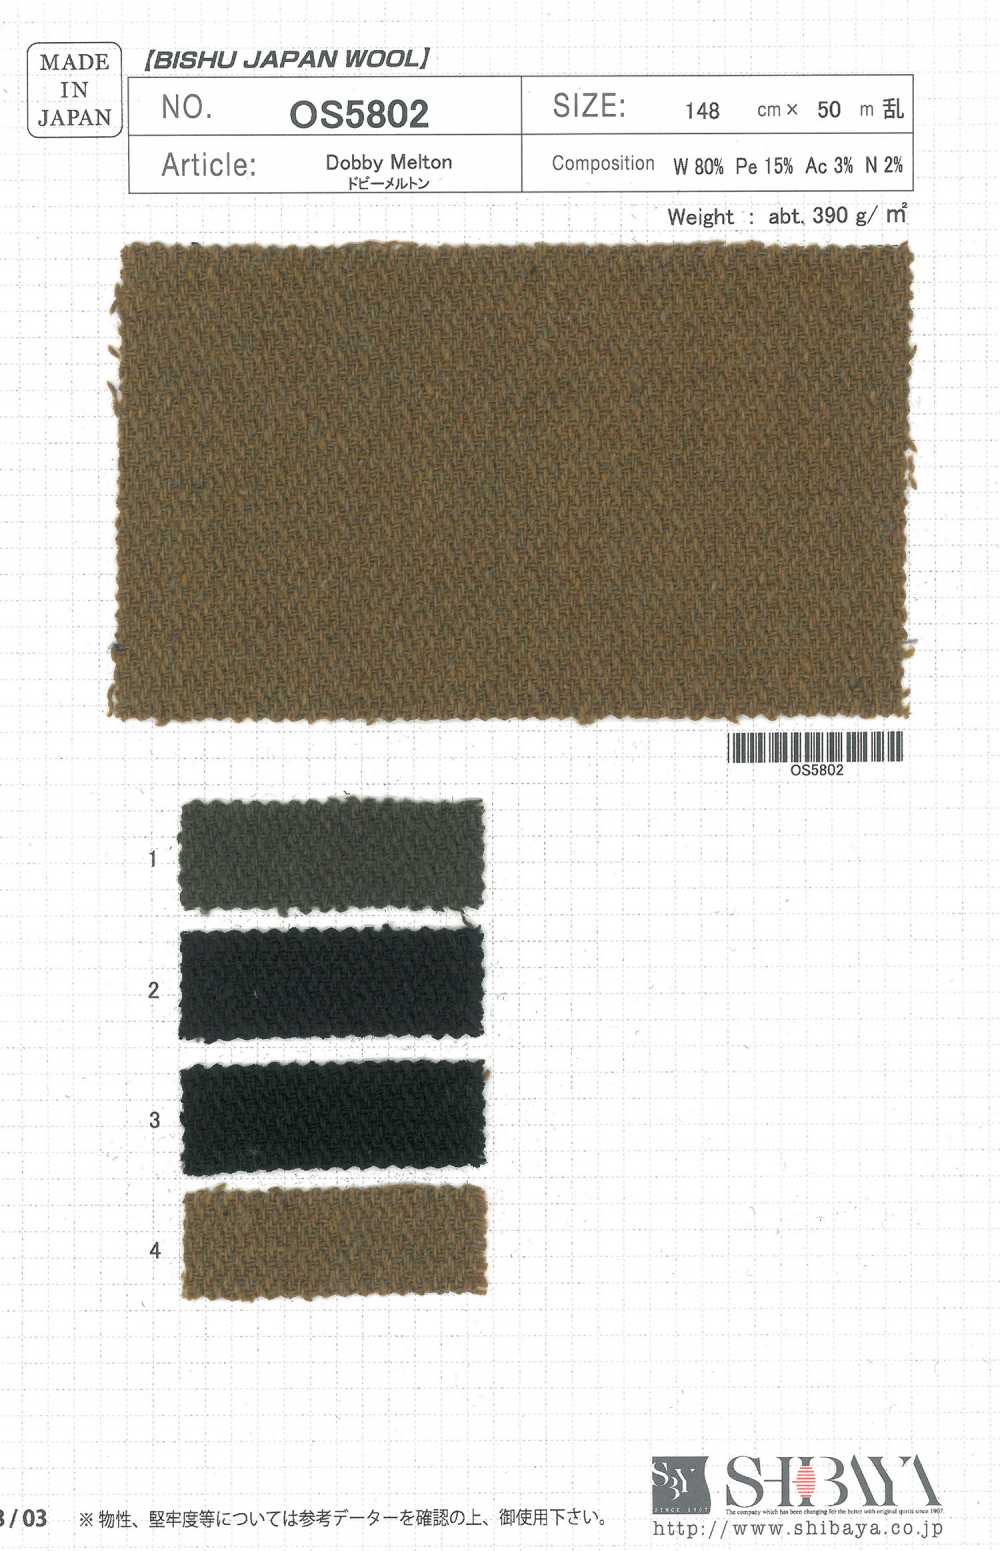 OS5802 Dobby Melton[Textile / Fabric] SHIBAYA